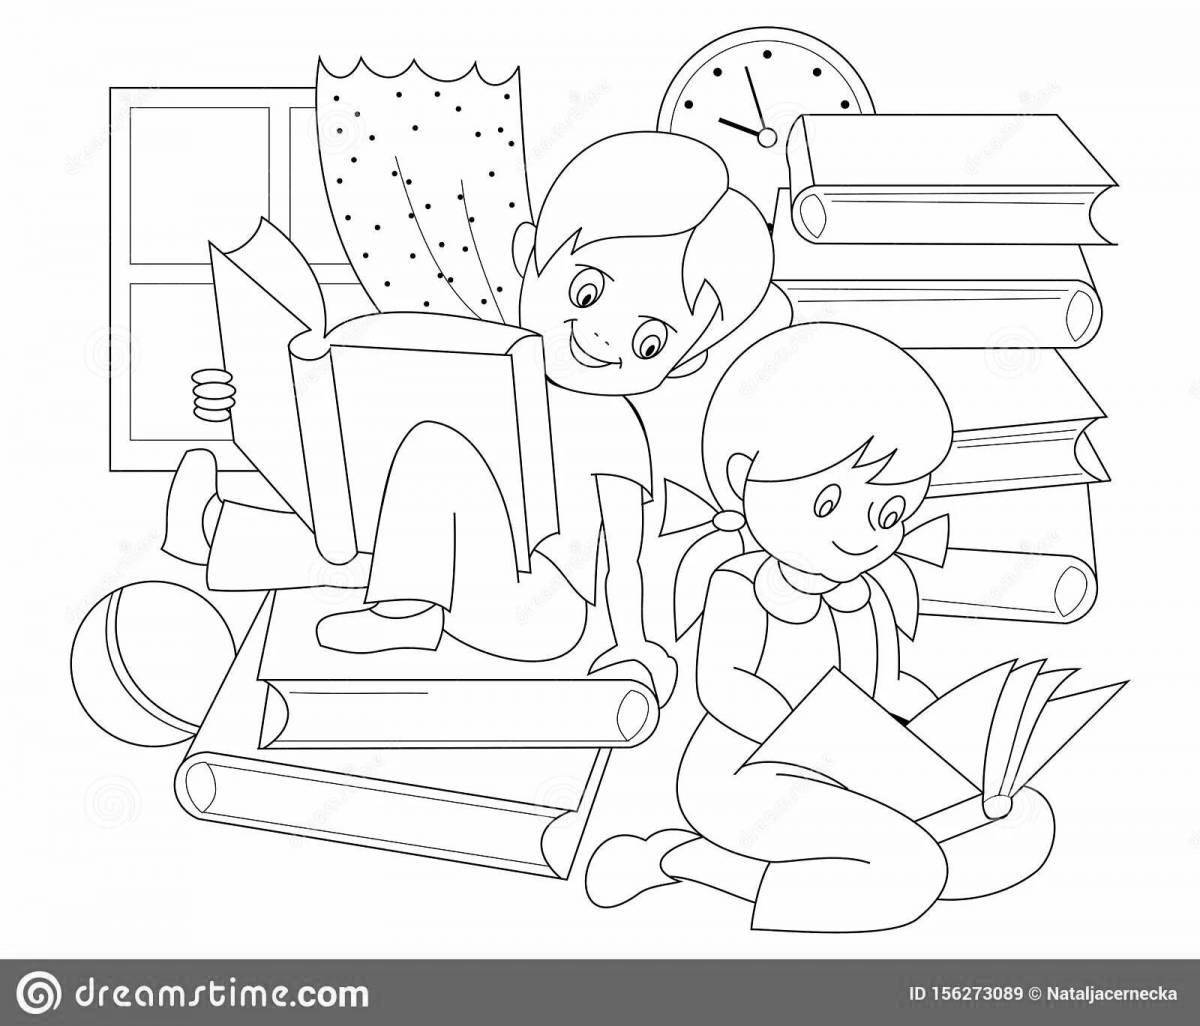 Children reading books #20